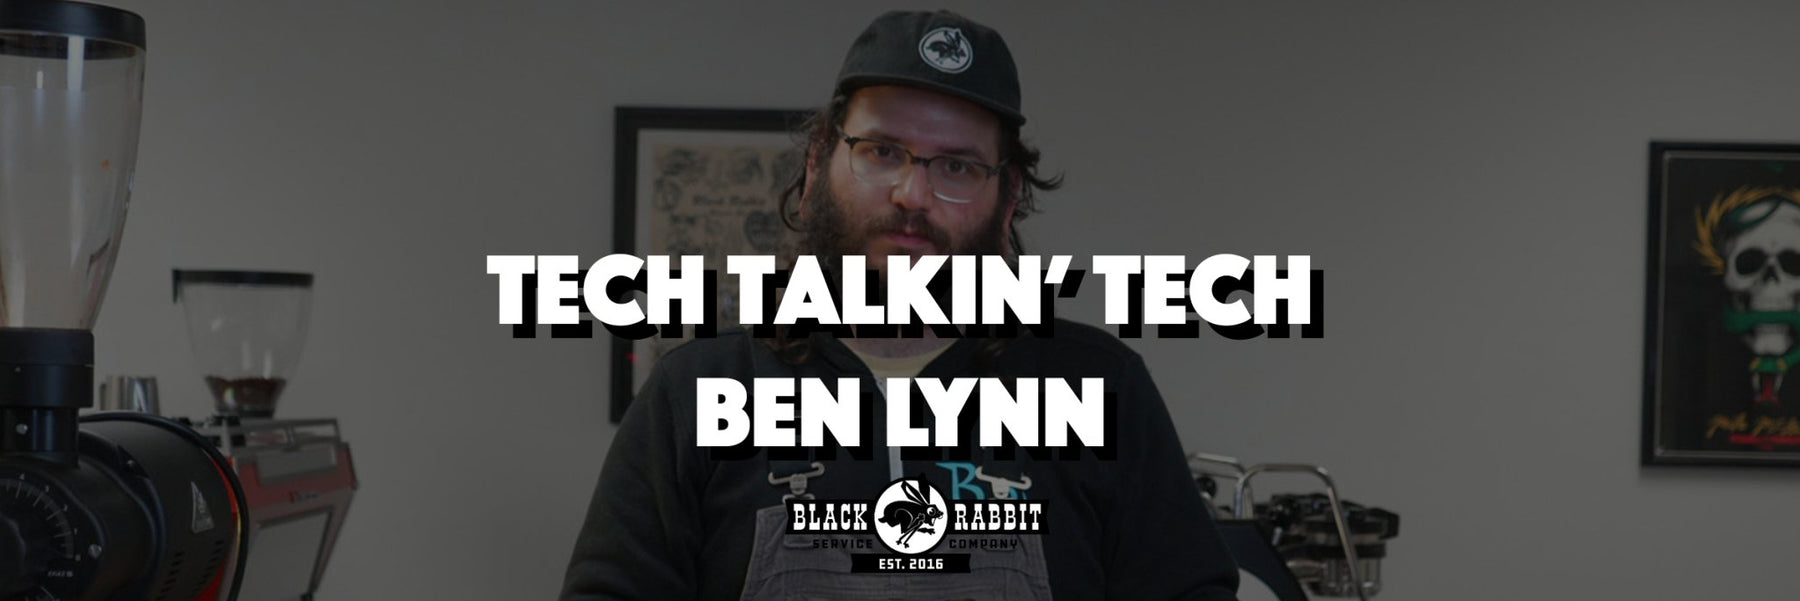 Tech Talkin' Tech: Ben Lynn - Black Rabbit Service Co.